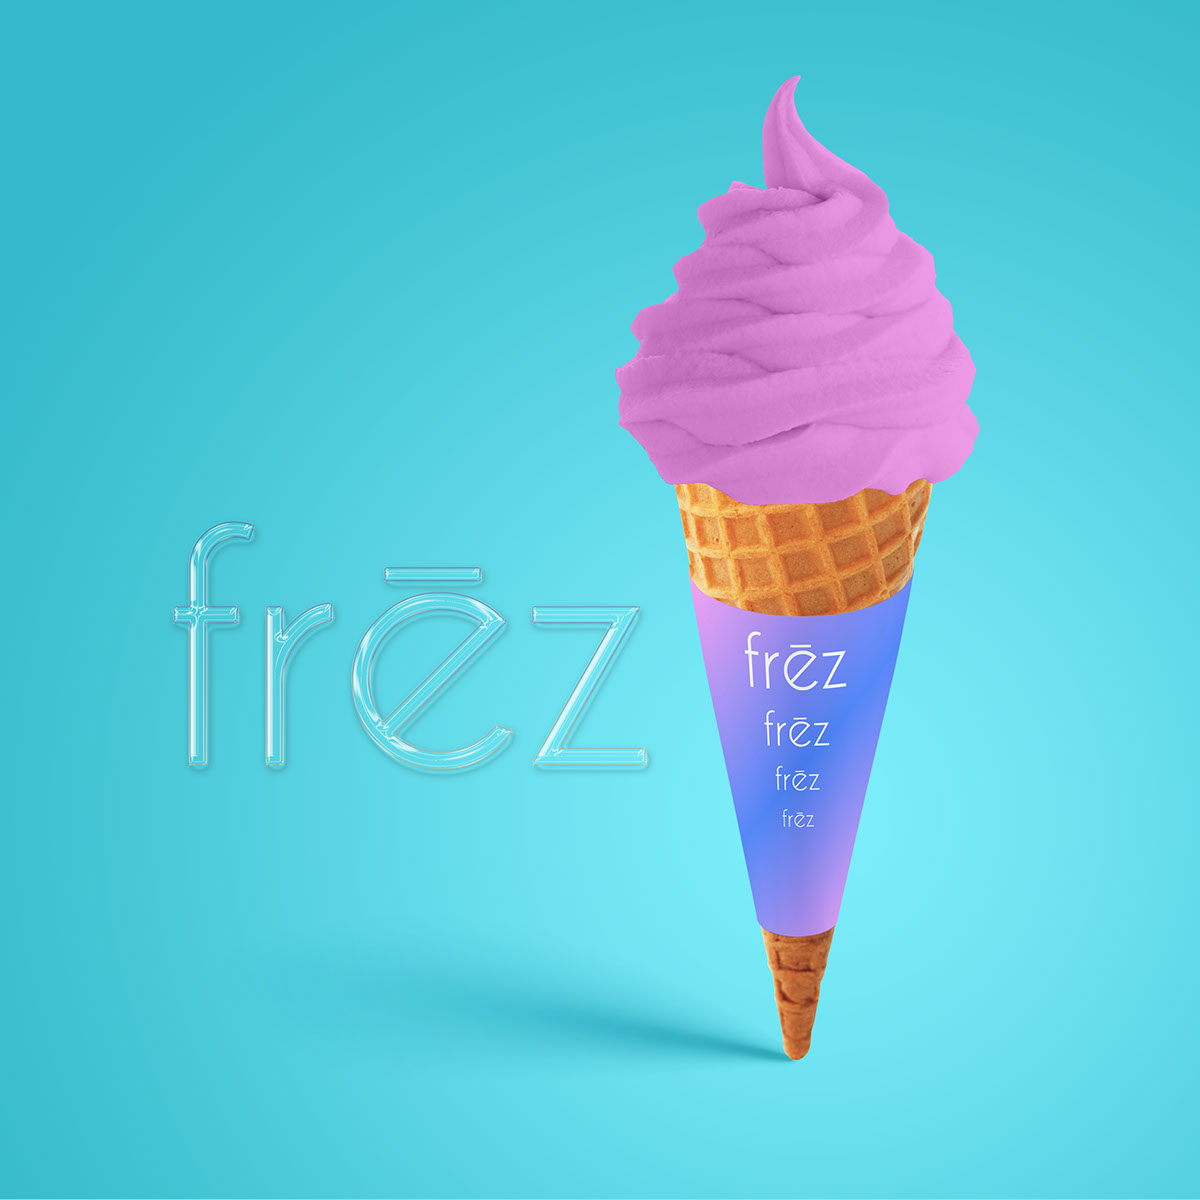 FREZ Icecream rendition image